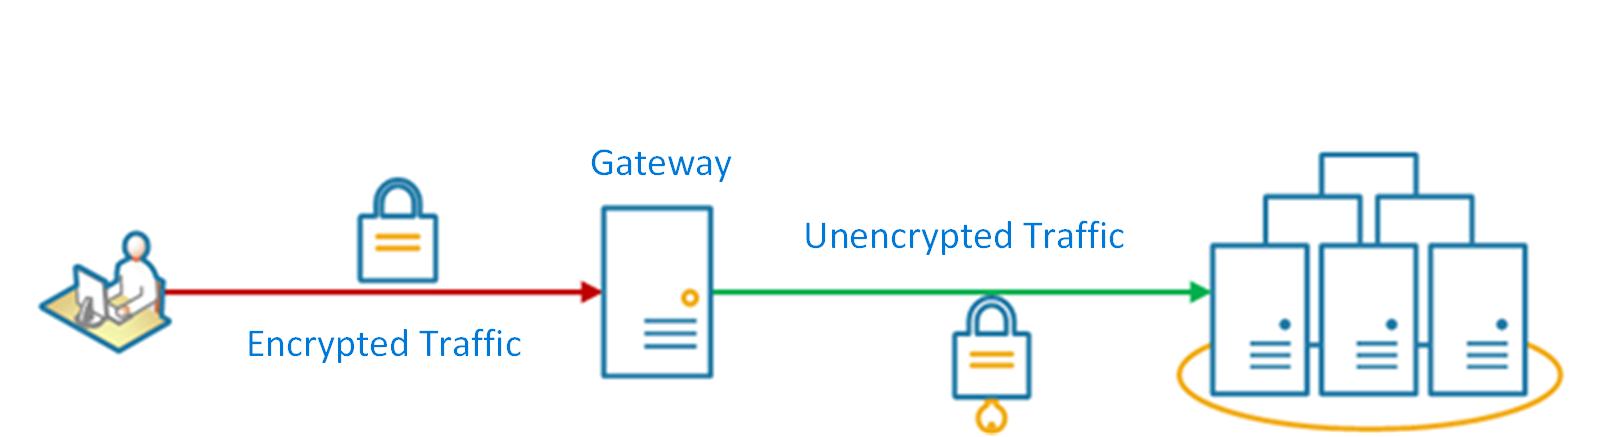 Diagramma del modello di offload gateway